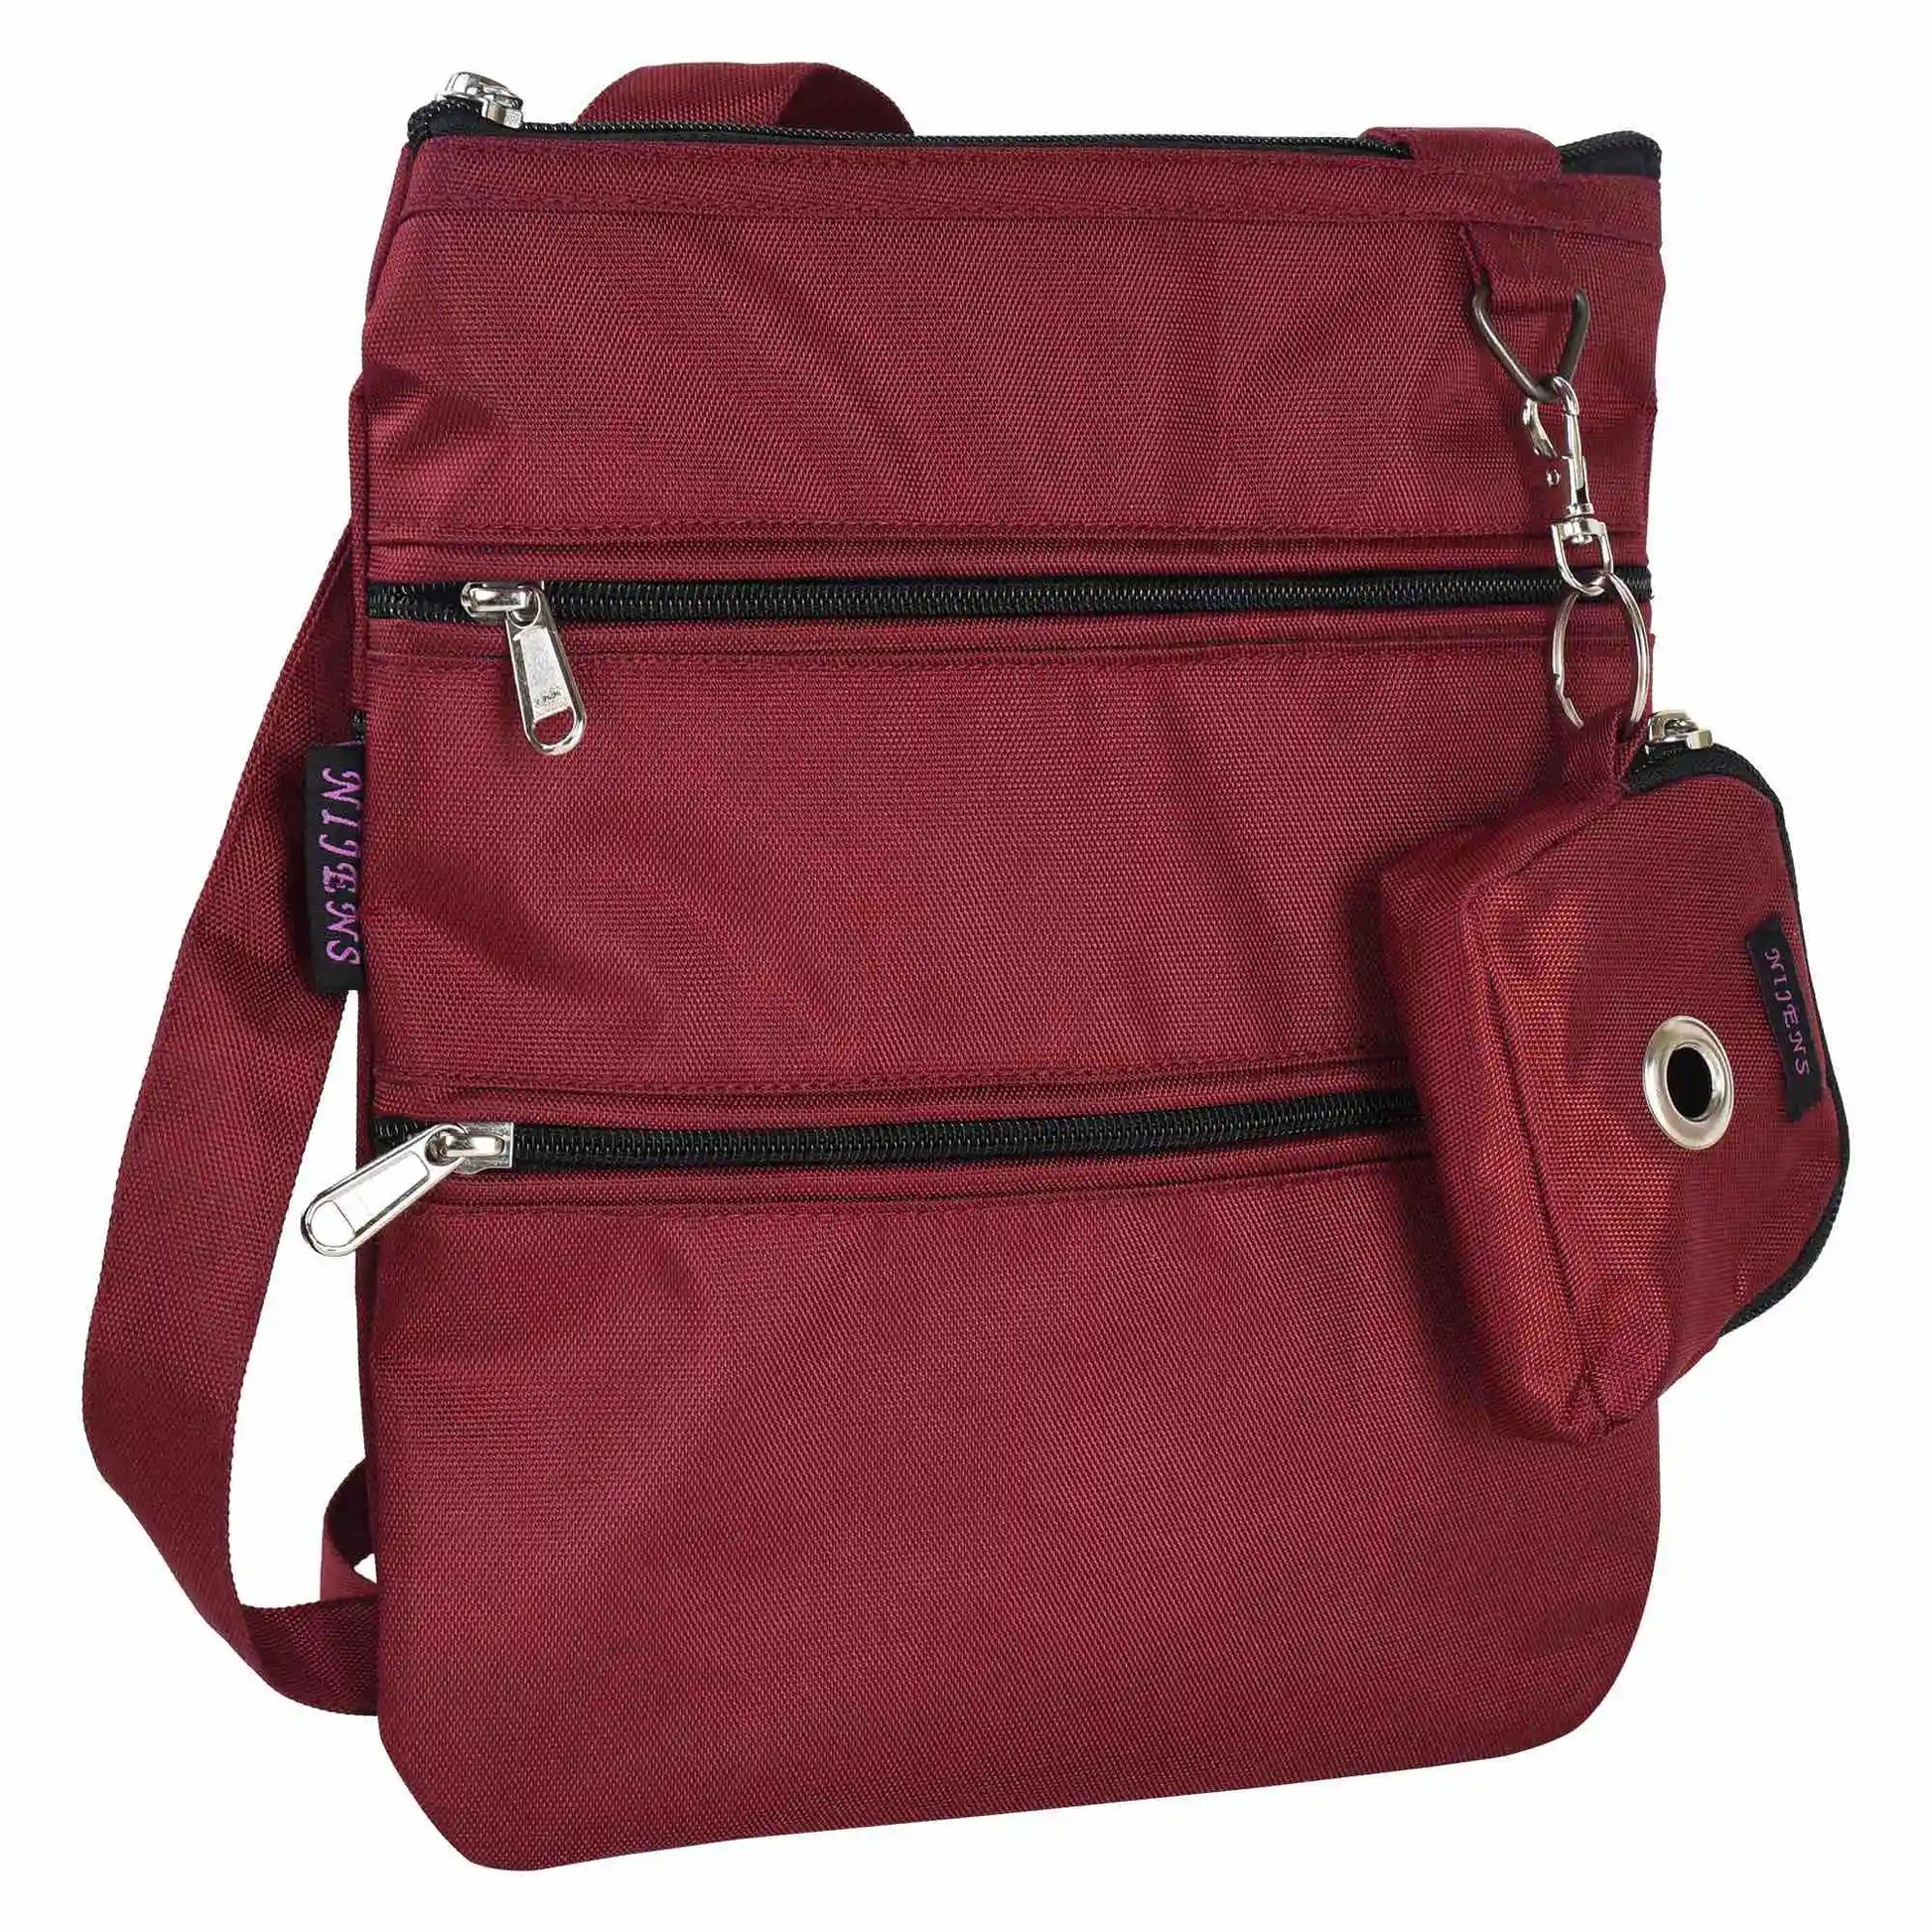 Gassi-Umhängetasche aus wasserabweisenden Stoff Rot mit 4 Reißverschlusstaschen und einer extra kleinen Beuteltasche für Hundekotbeutel zum Anhängen.